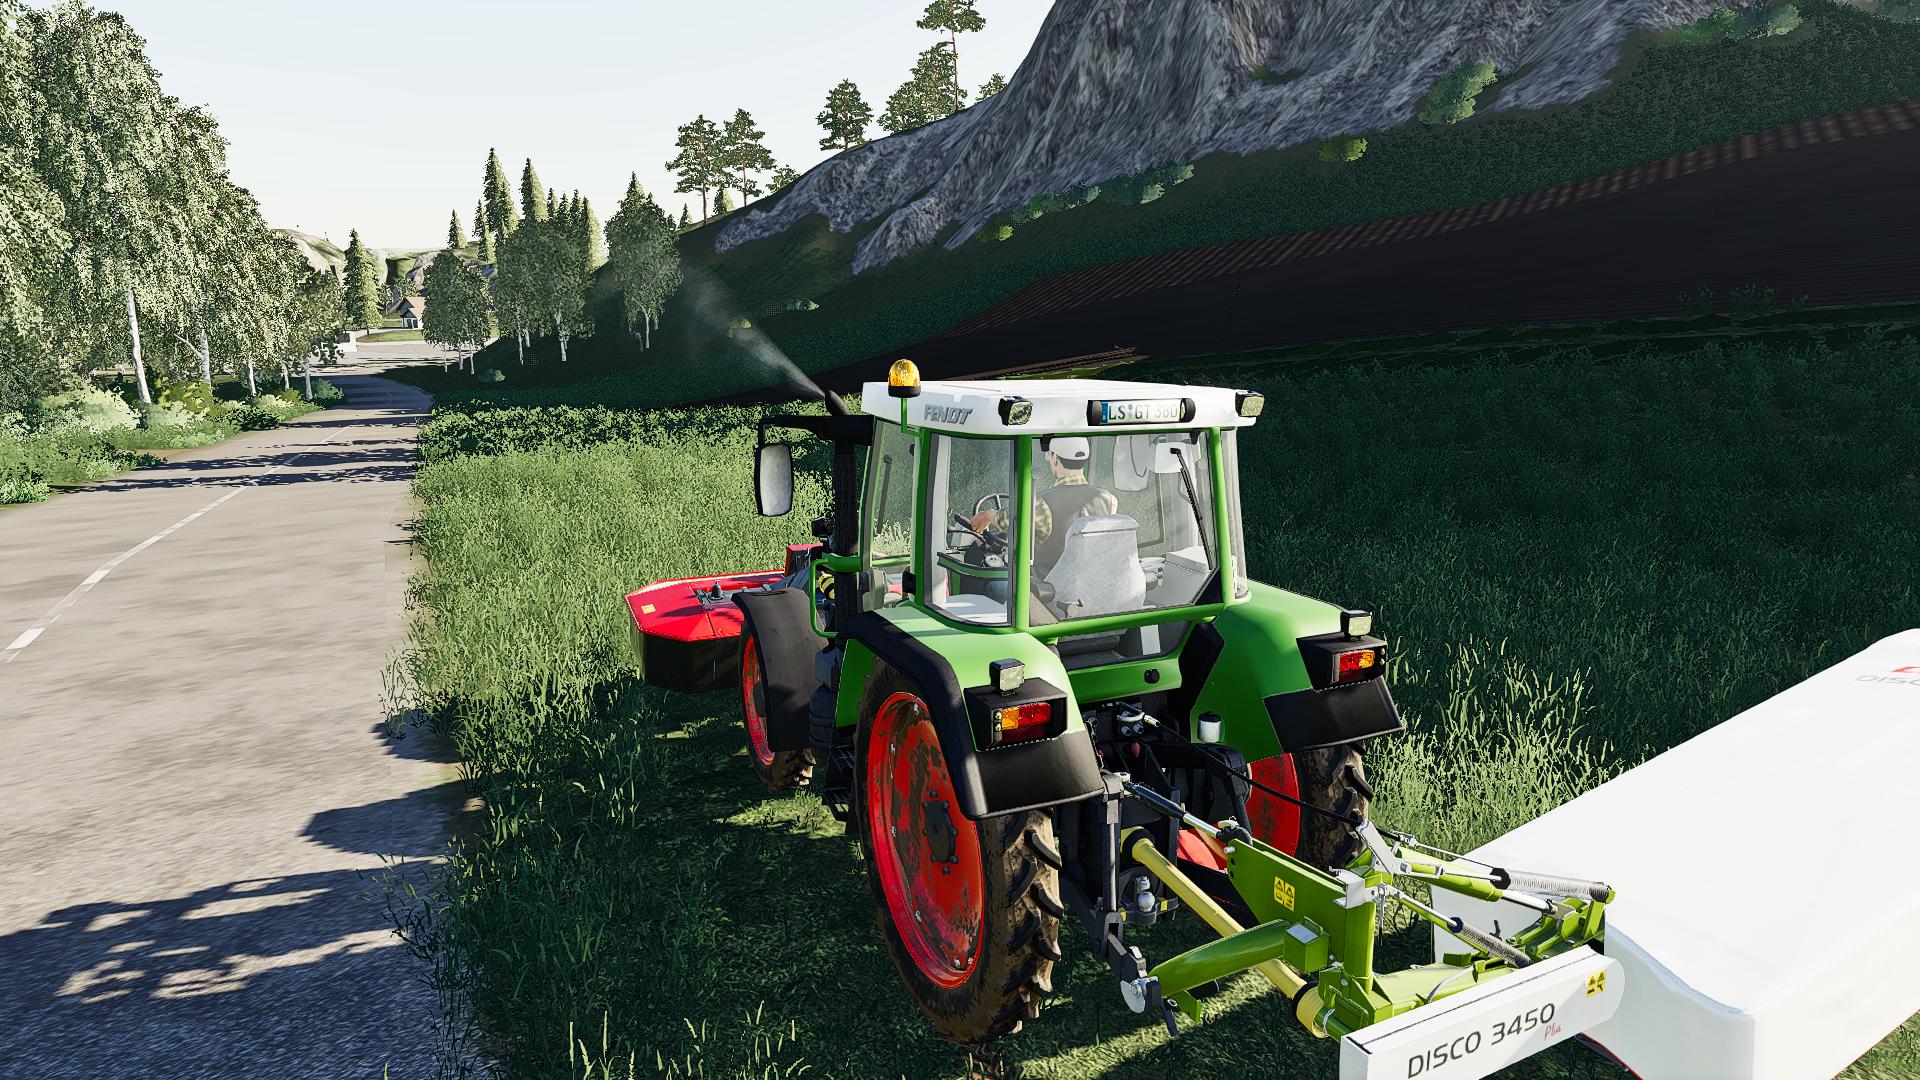  Tondeuse  Mod  Pack v1 0 0 1 FS19  FS19  Mods  Farming 